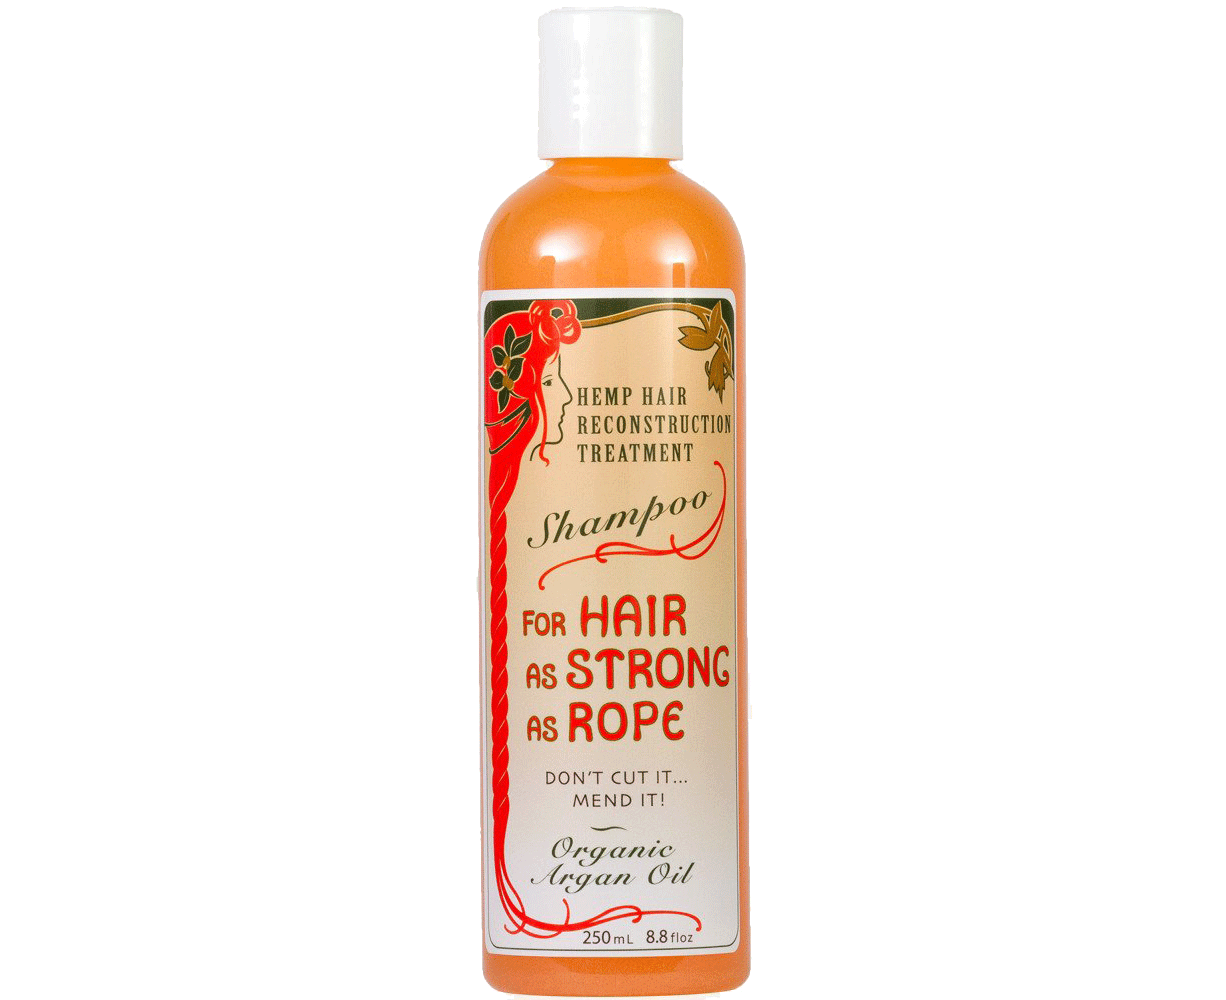 Argan Hair Strengthening Shampoo - 250ml - BEST SELLER - Haircare + Treatment